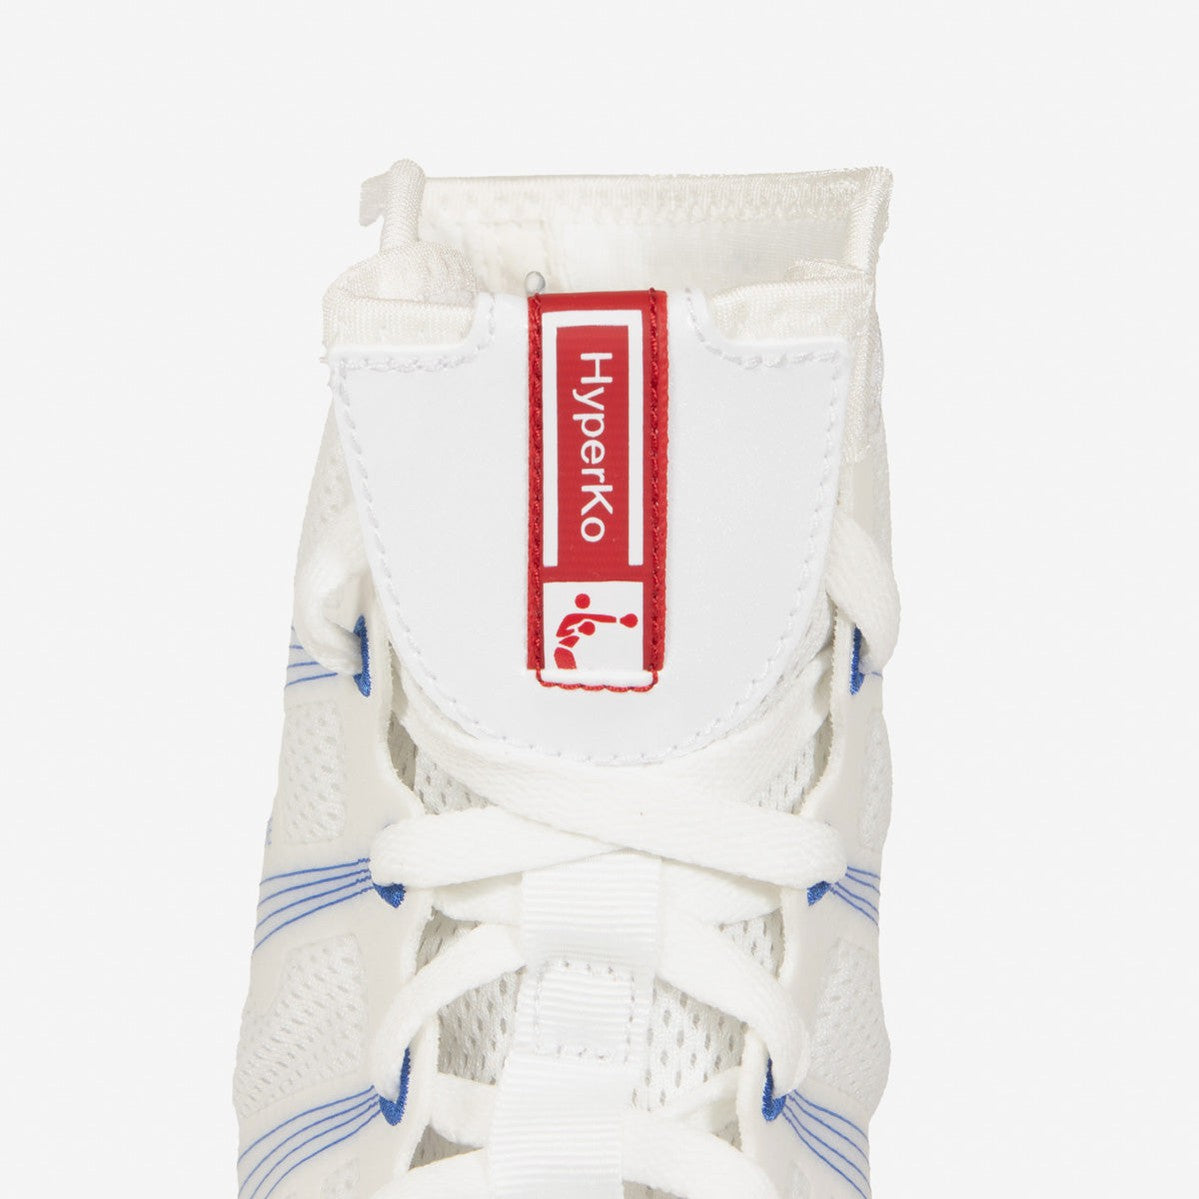 Boksschoenen Nike Hyperko Wit-Rood